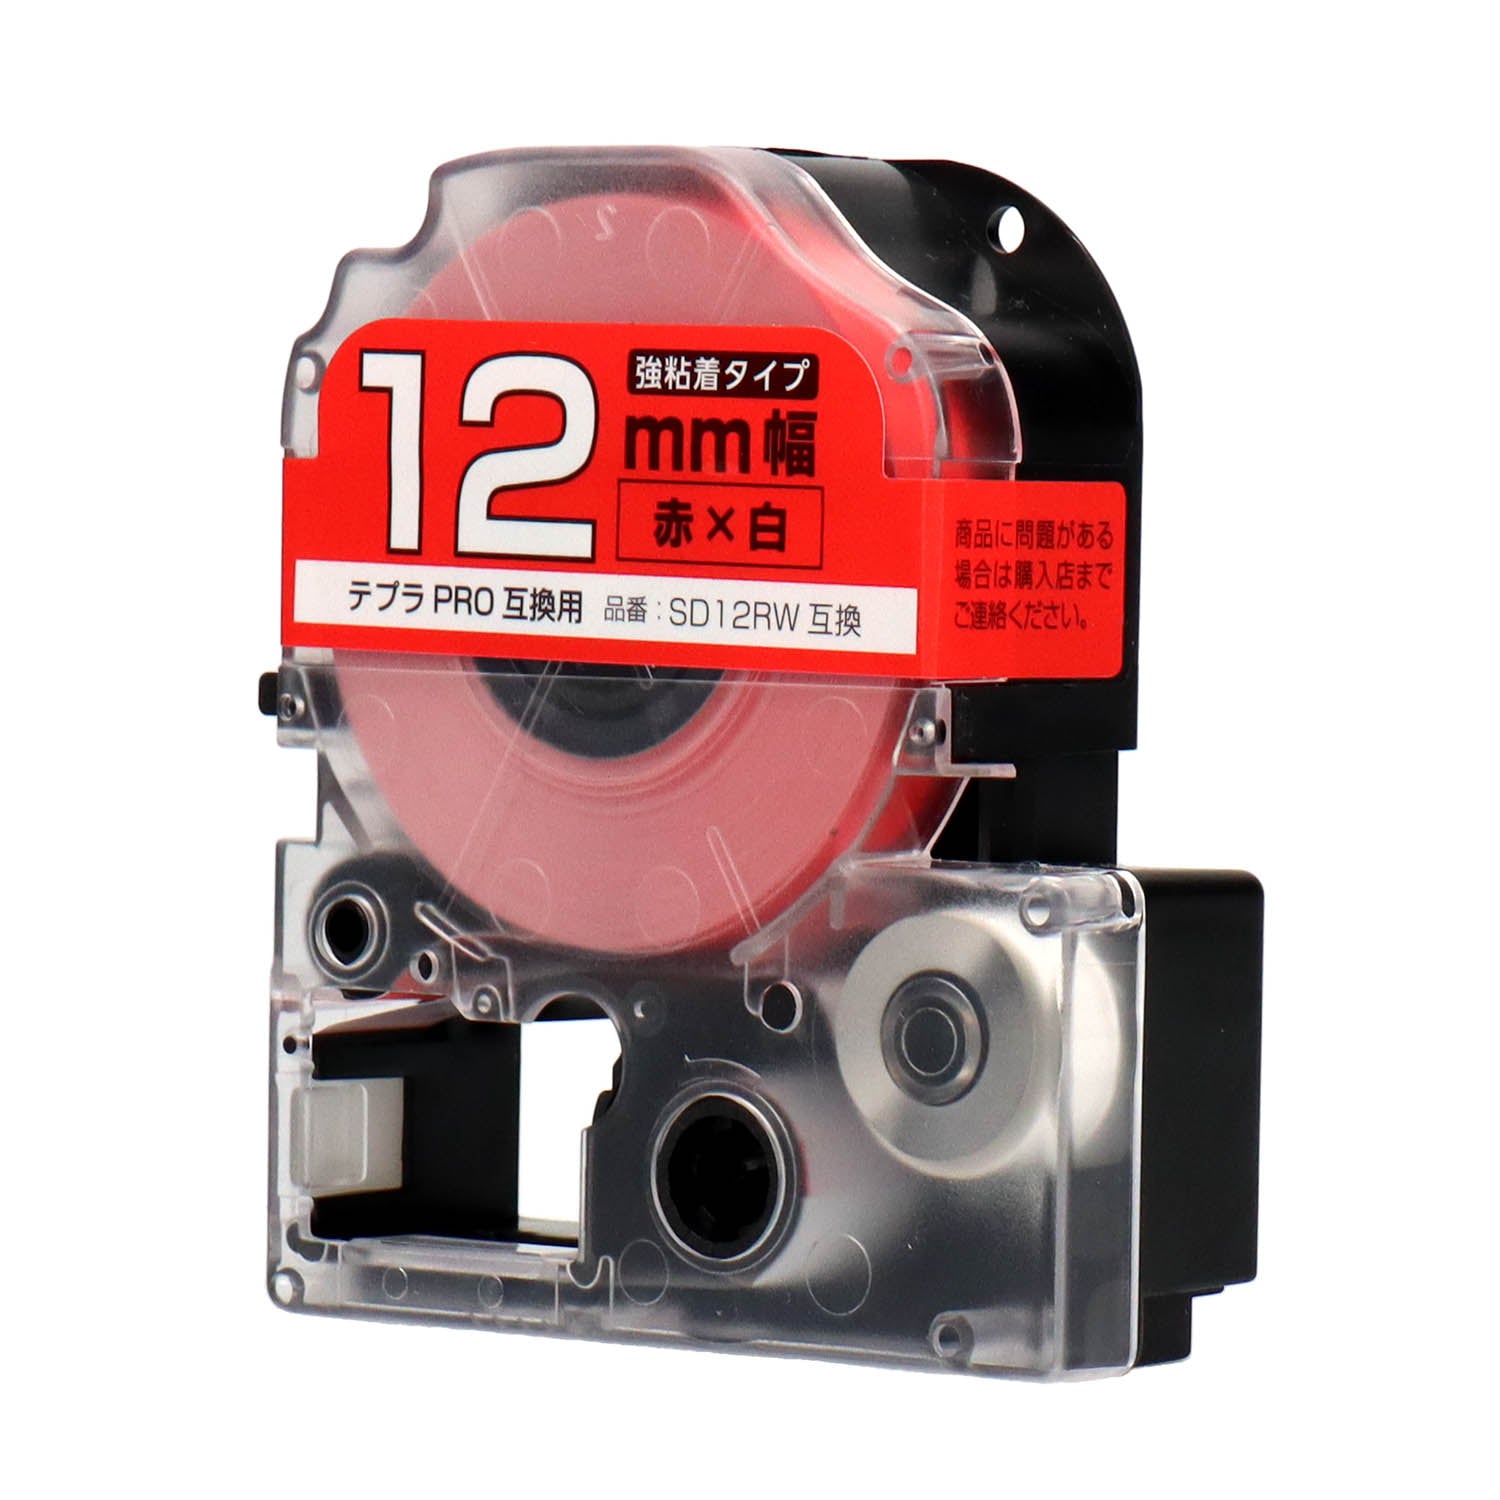 テプラPRO用互換テープカートリッジ 赤×白文字 12mm